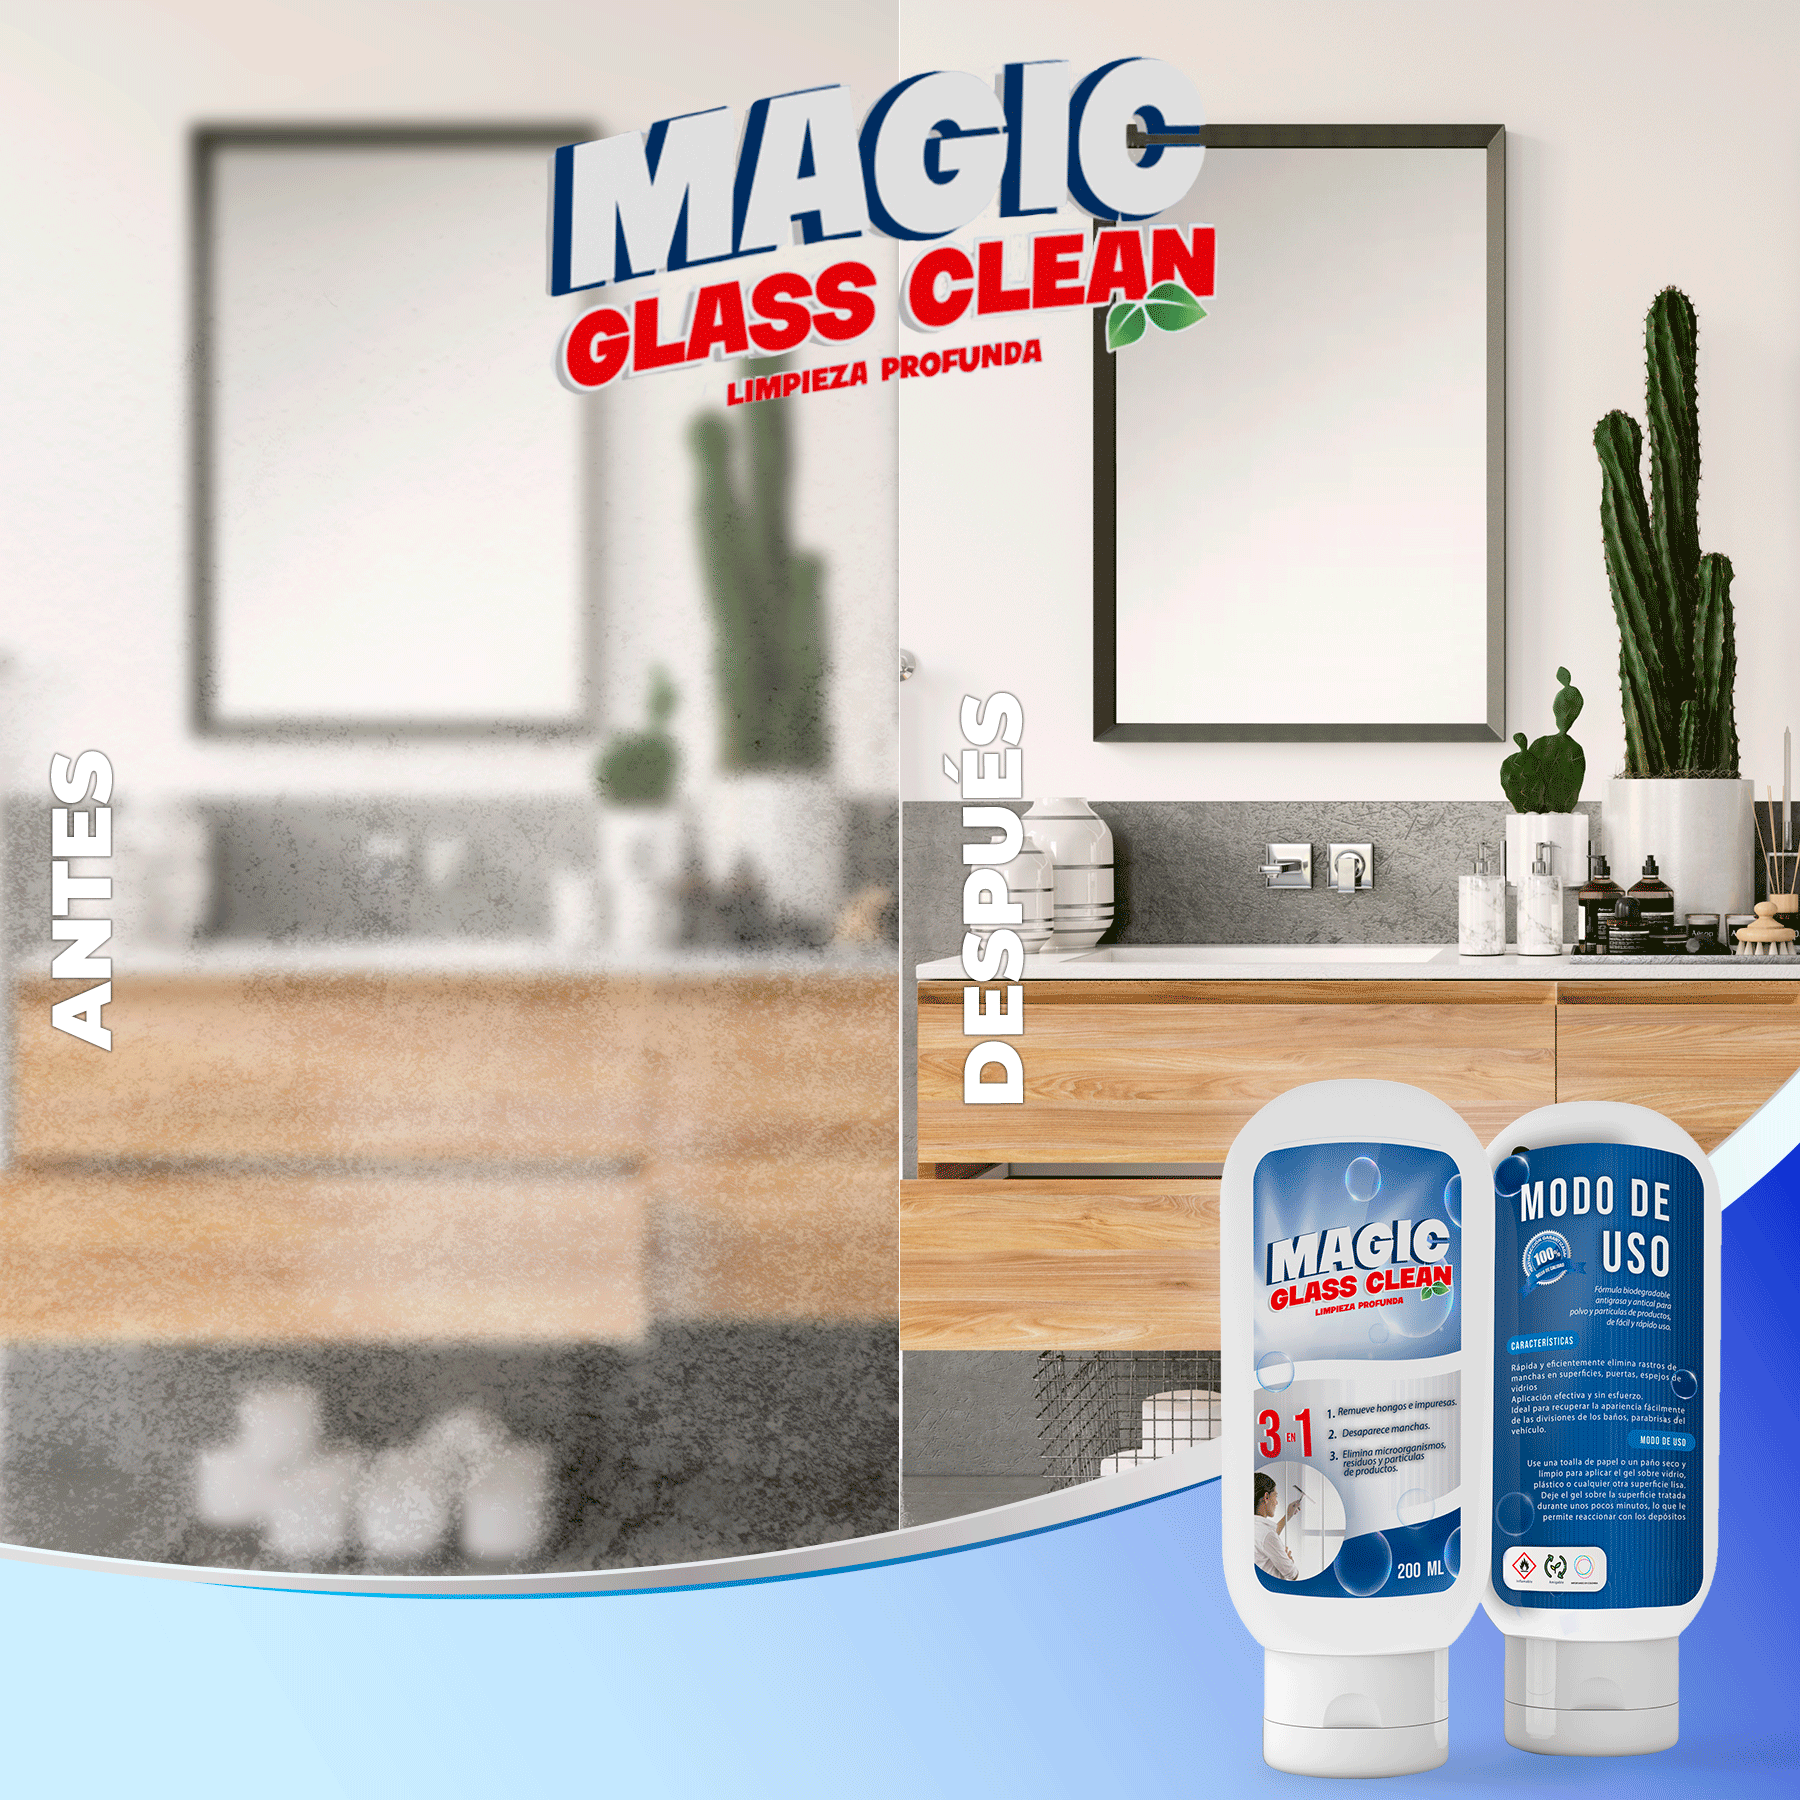 MAGIC GLASS CLEAN 3 EN 1 - El original desmanchador de vidrios